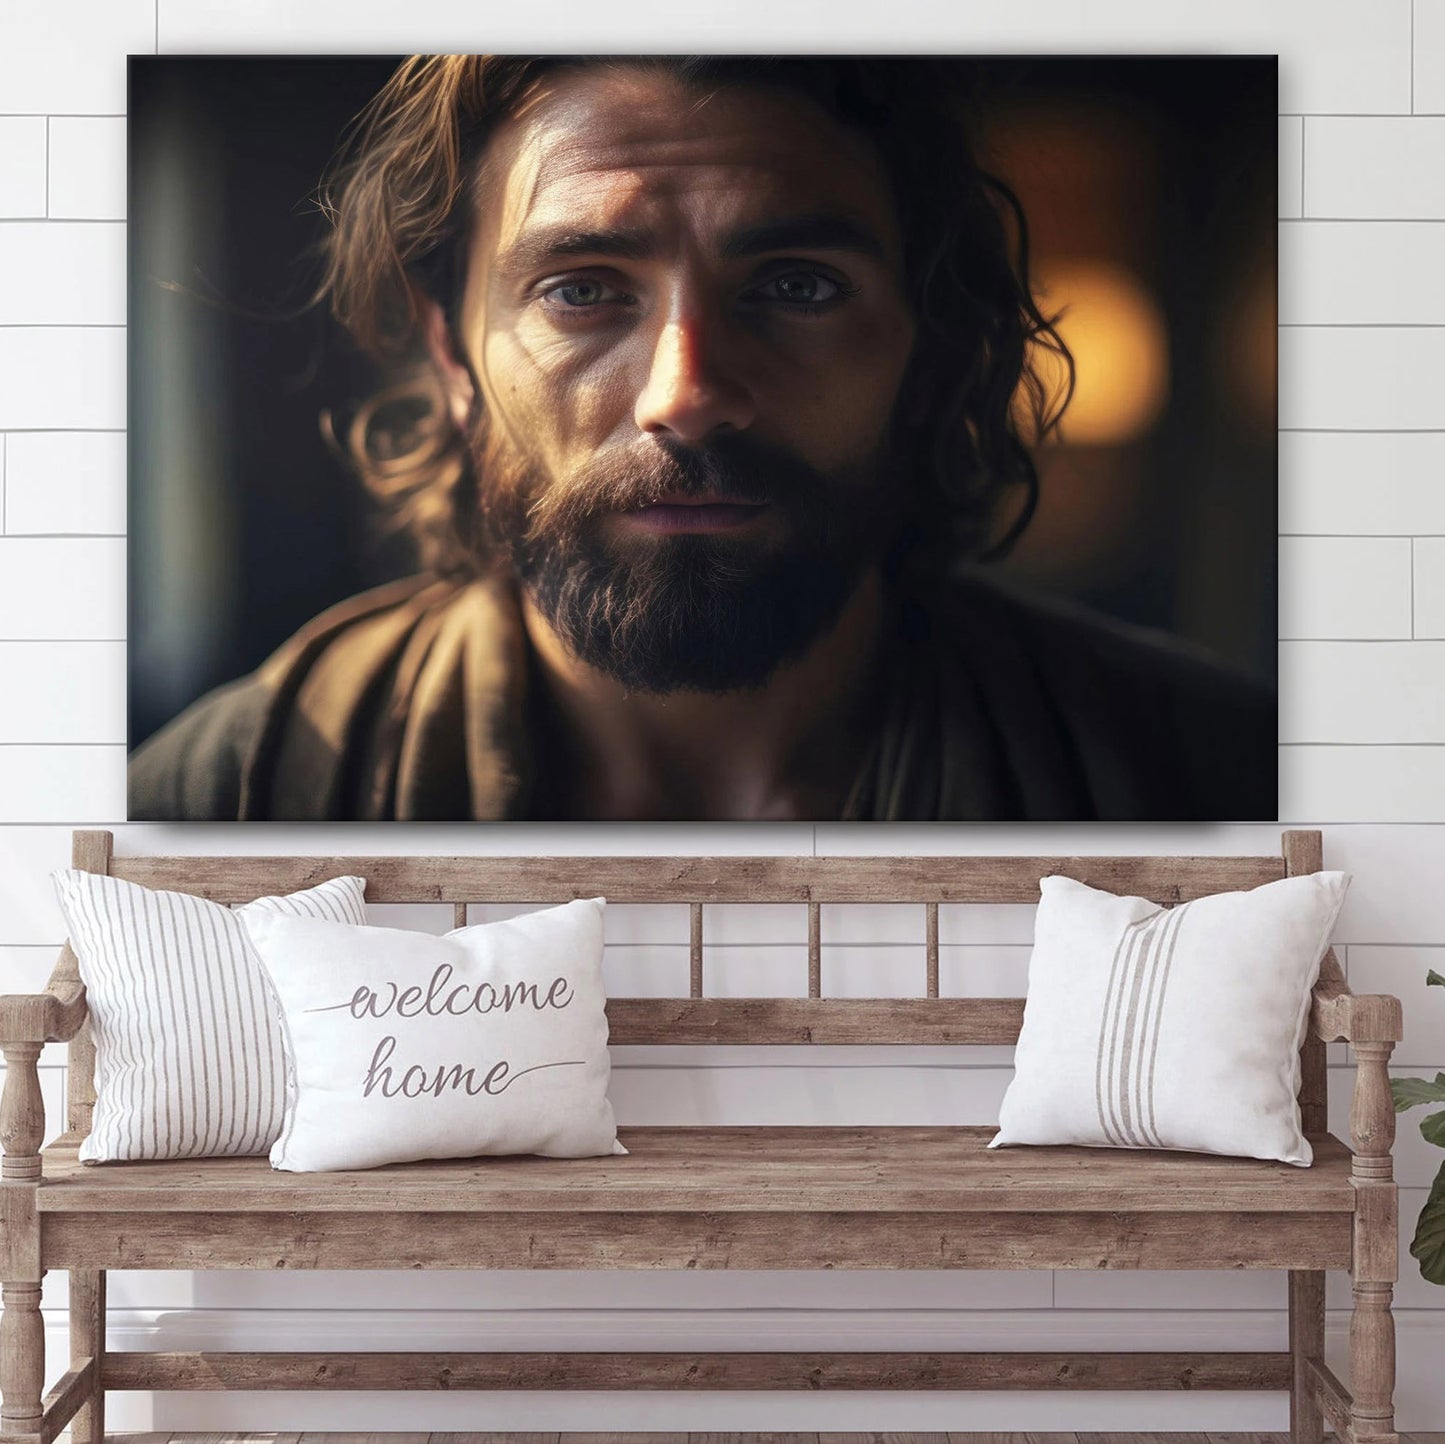 Jesus Portrait - Canvas Picture - Jesus Canvas Pictures - Christian Wall Art